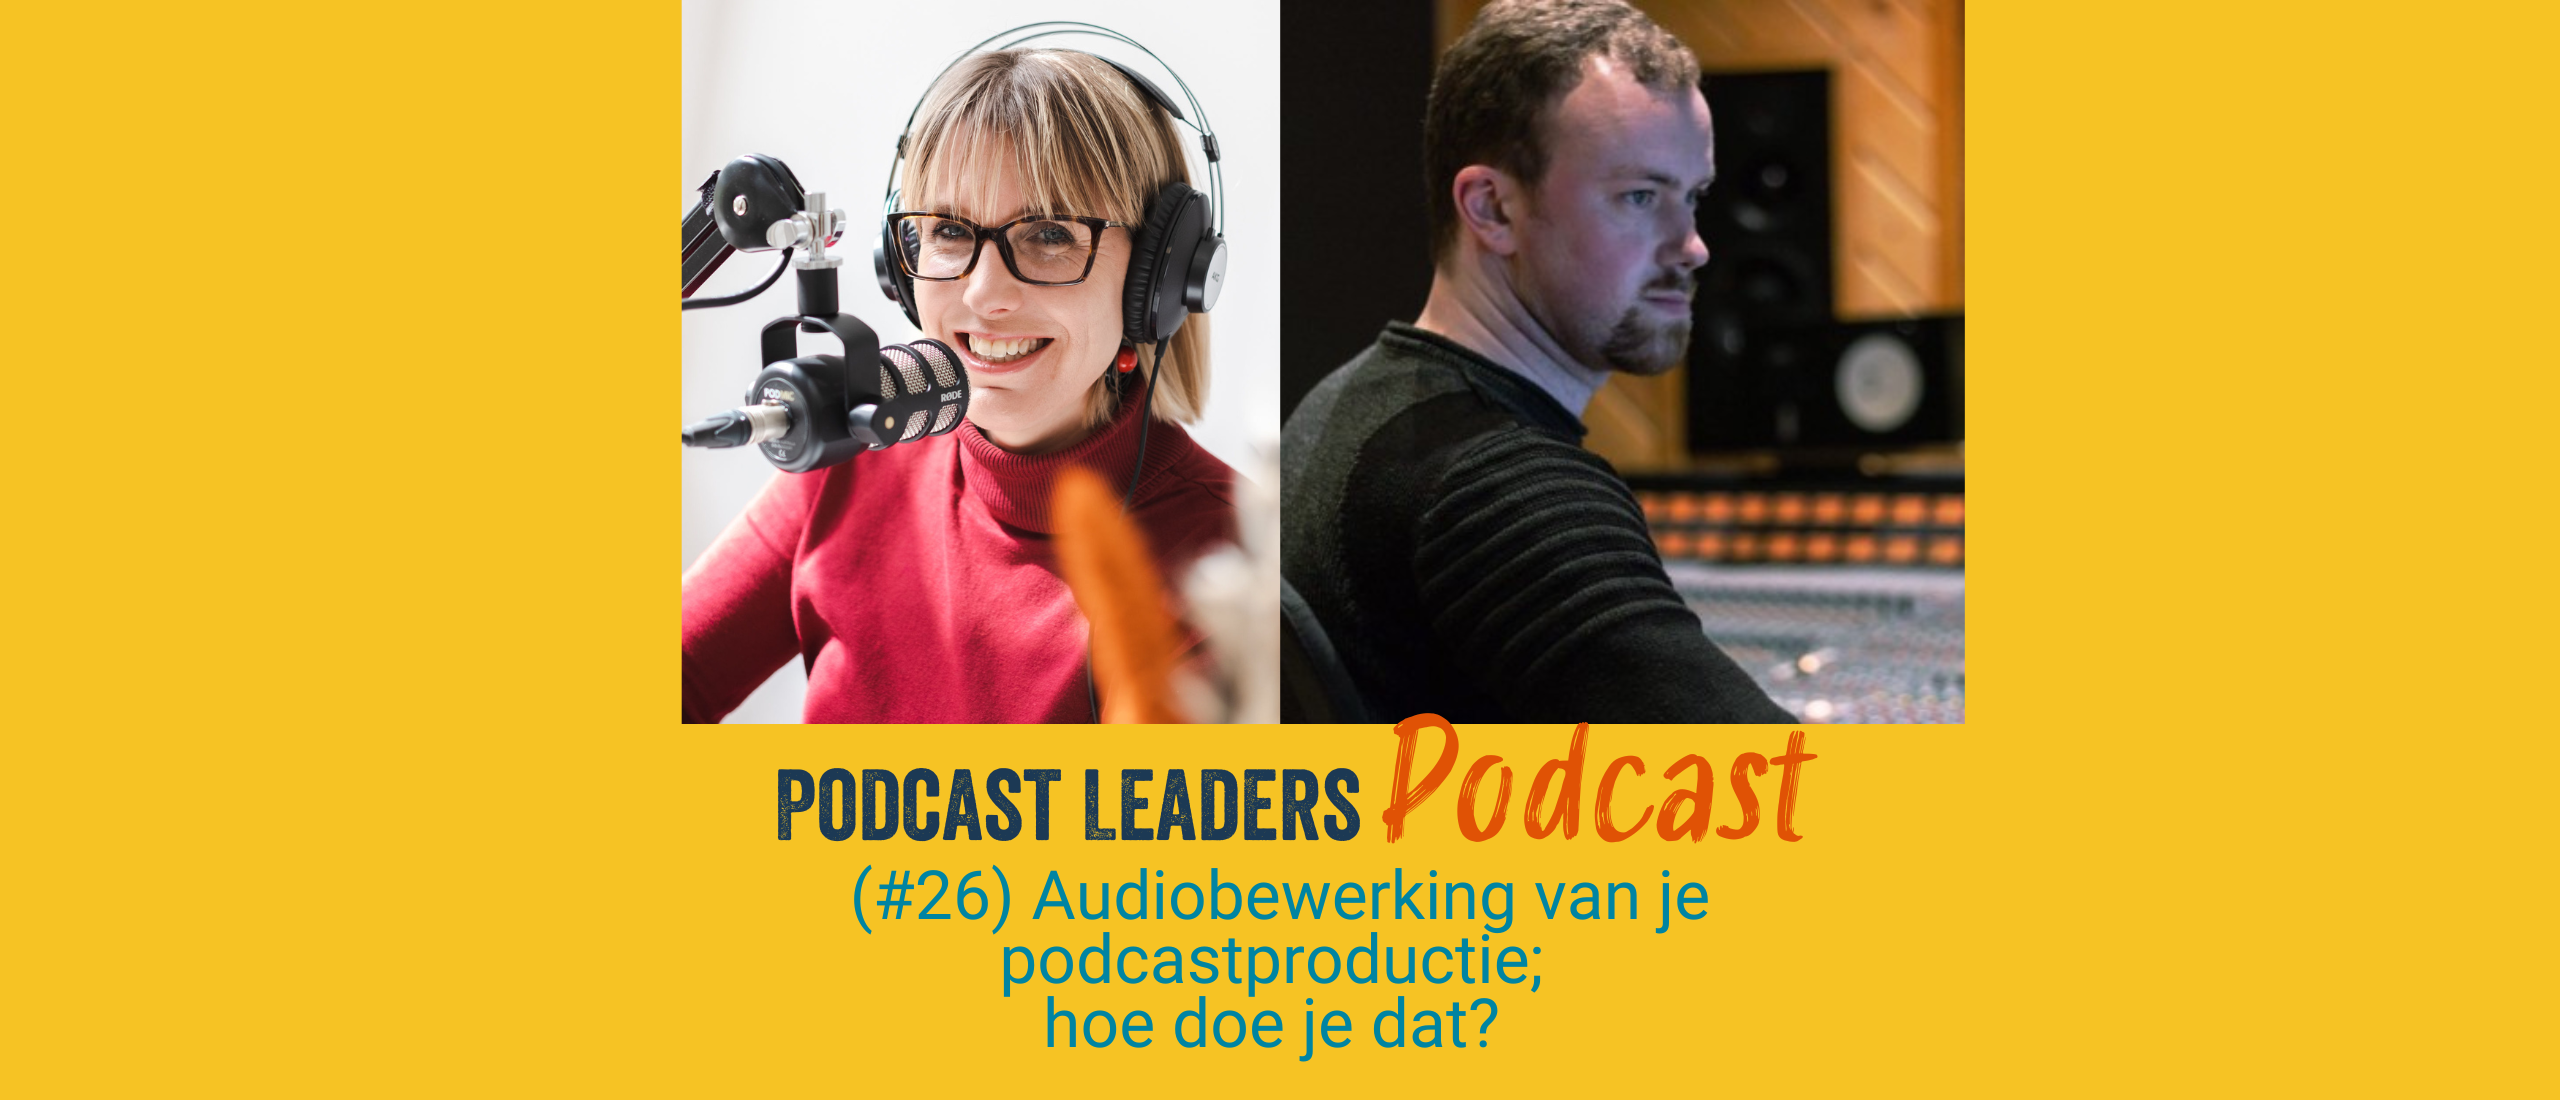 EP26 Audiobewerking van je podcastproductie; hoe doe je dat? met Frank de Jong